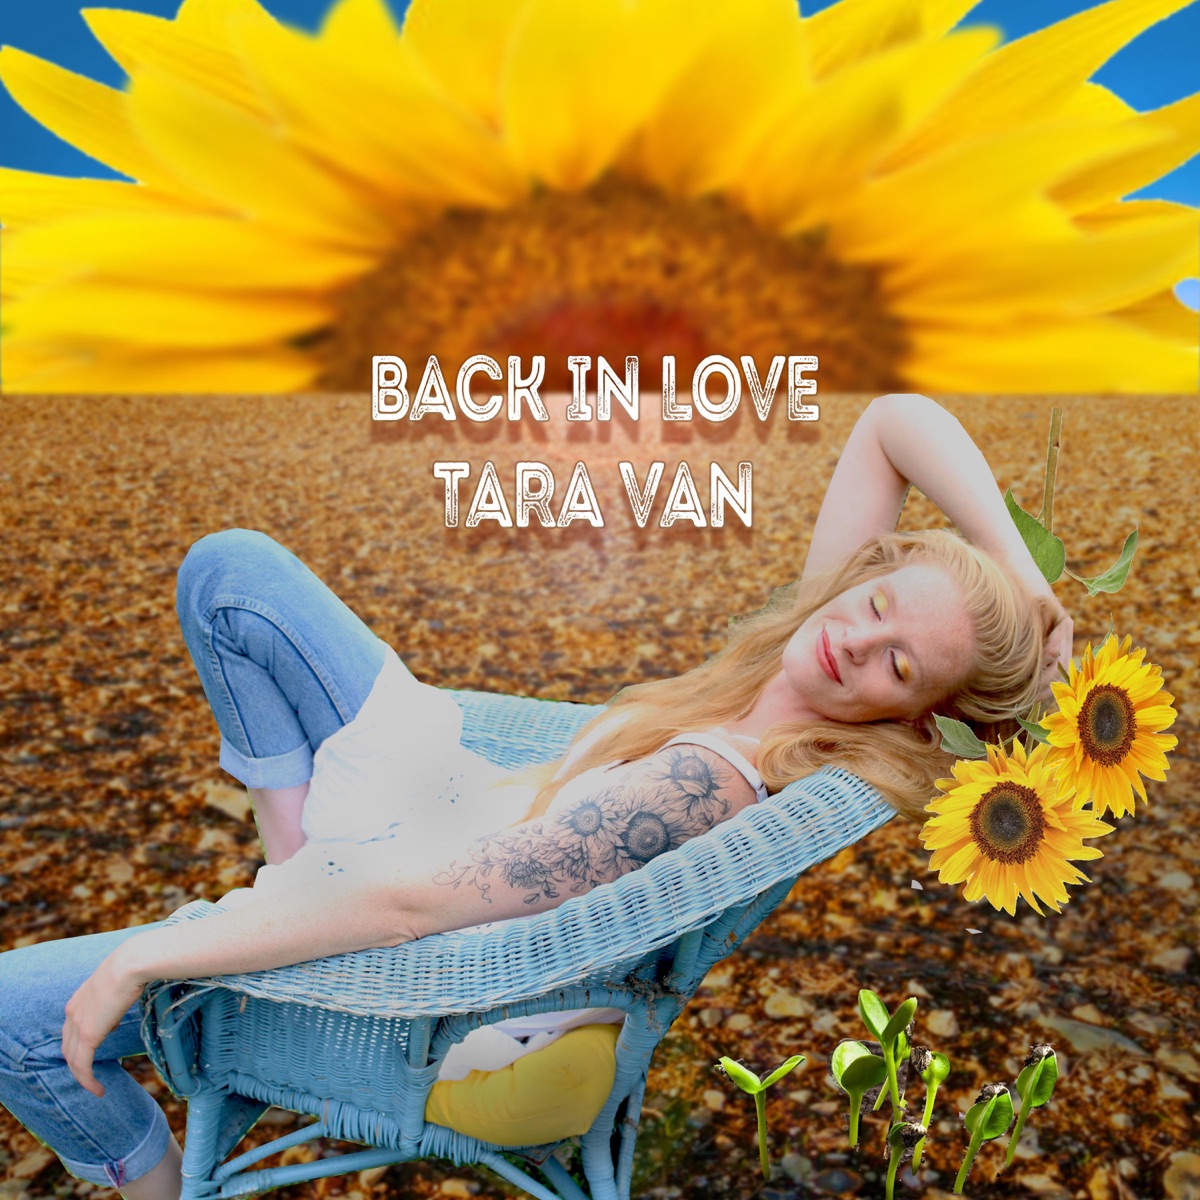 Back In Love - Single - Album by Tara Van - Apple Music